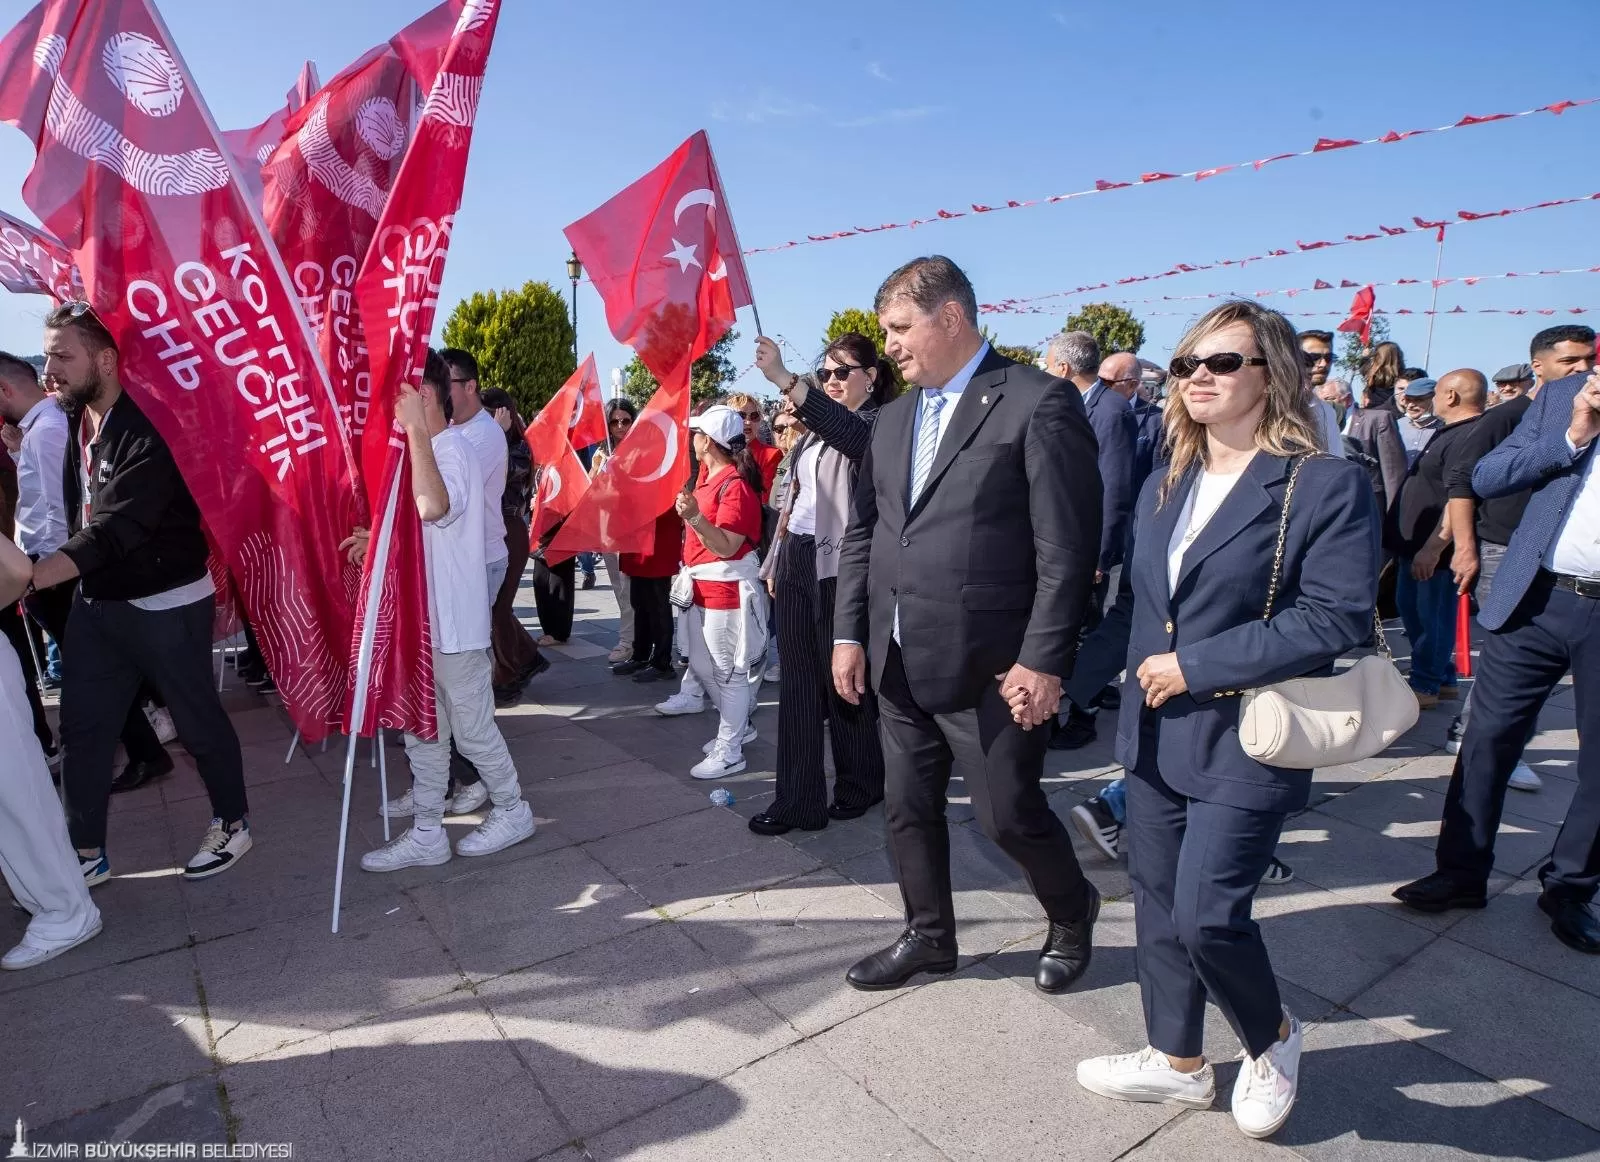 İzmir Büyükşehir Belediye Başkanı Dr. Cemil Tugay, 19 Mayıs Atatürk'ü Anma, Gençlik ve Spor Bayramı'nı Samsun'da Cumhuriyet Halk Partisi (CHP) tarafından düzenlenen programla kutladı.